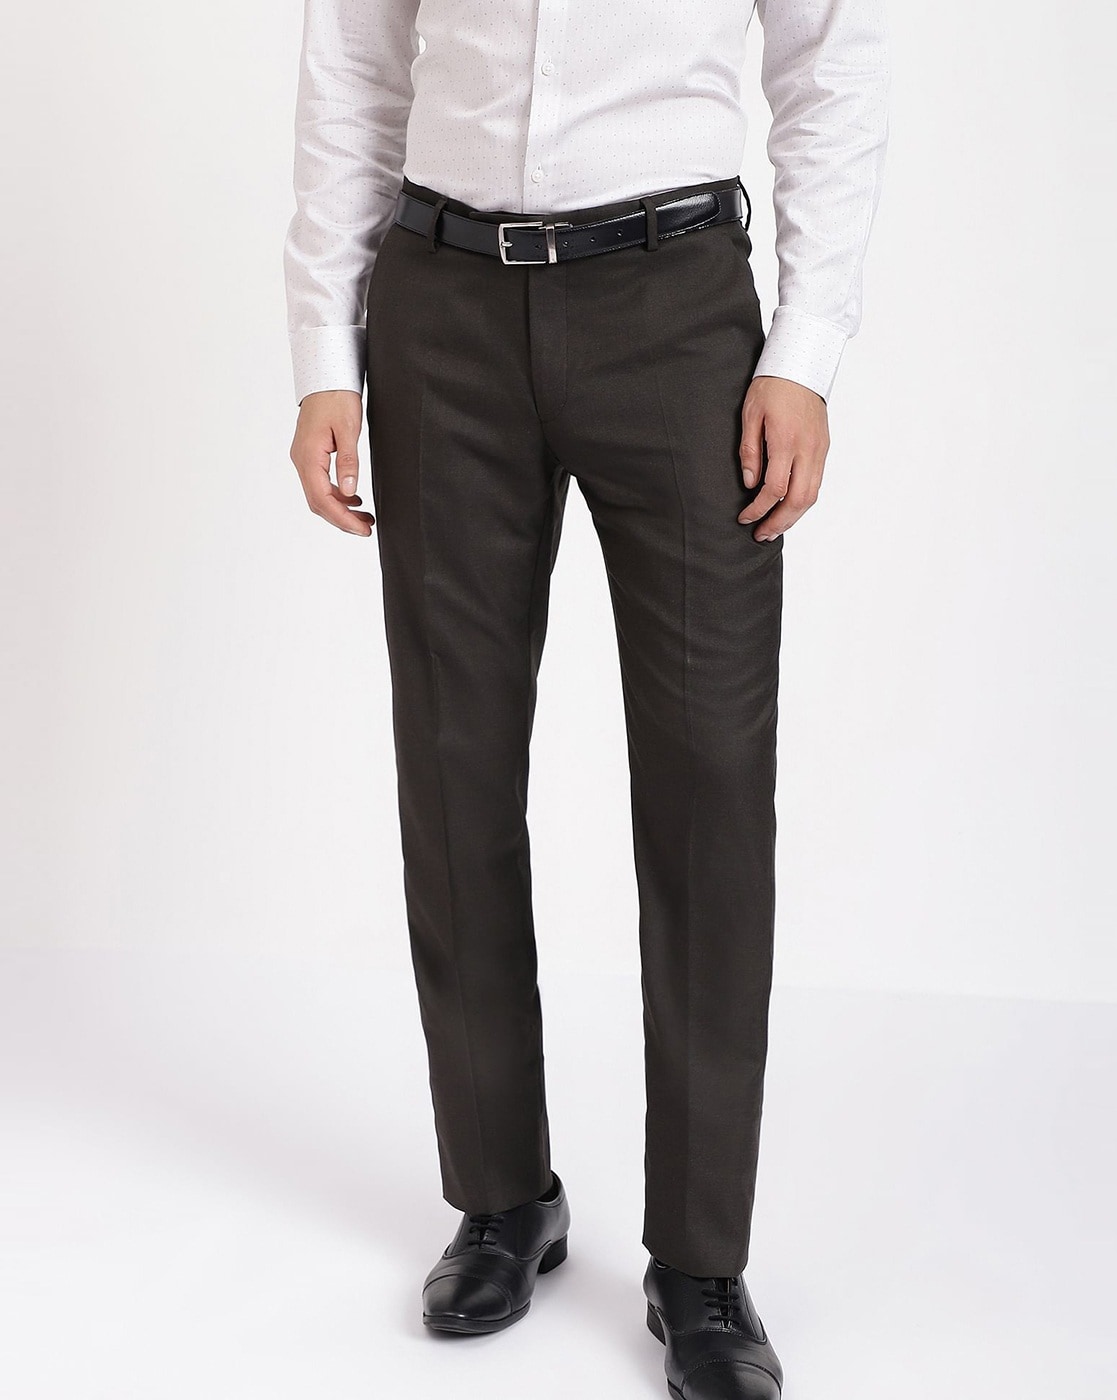 Buy Black Trousers  Pants for Men by ARROW Online  Ajiocom